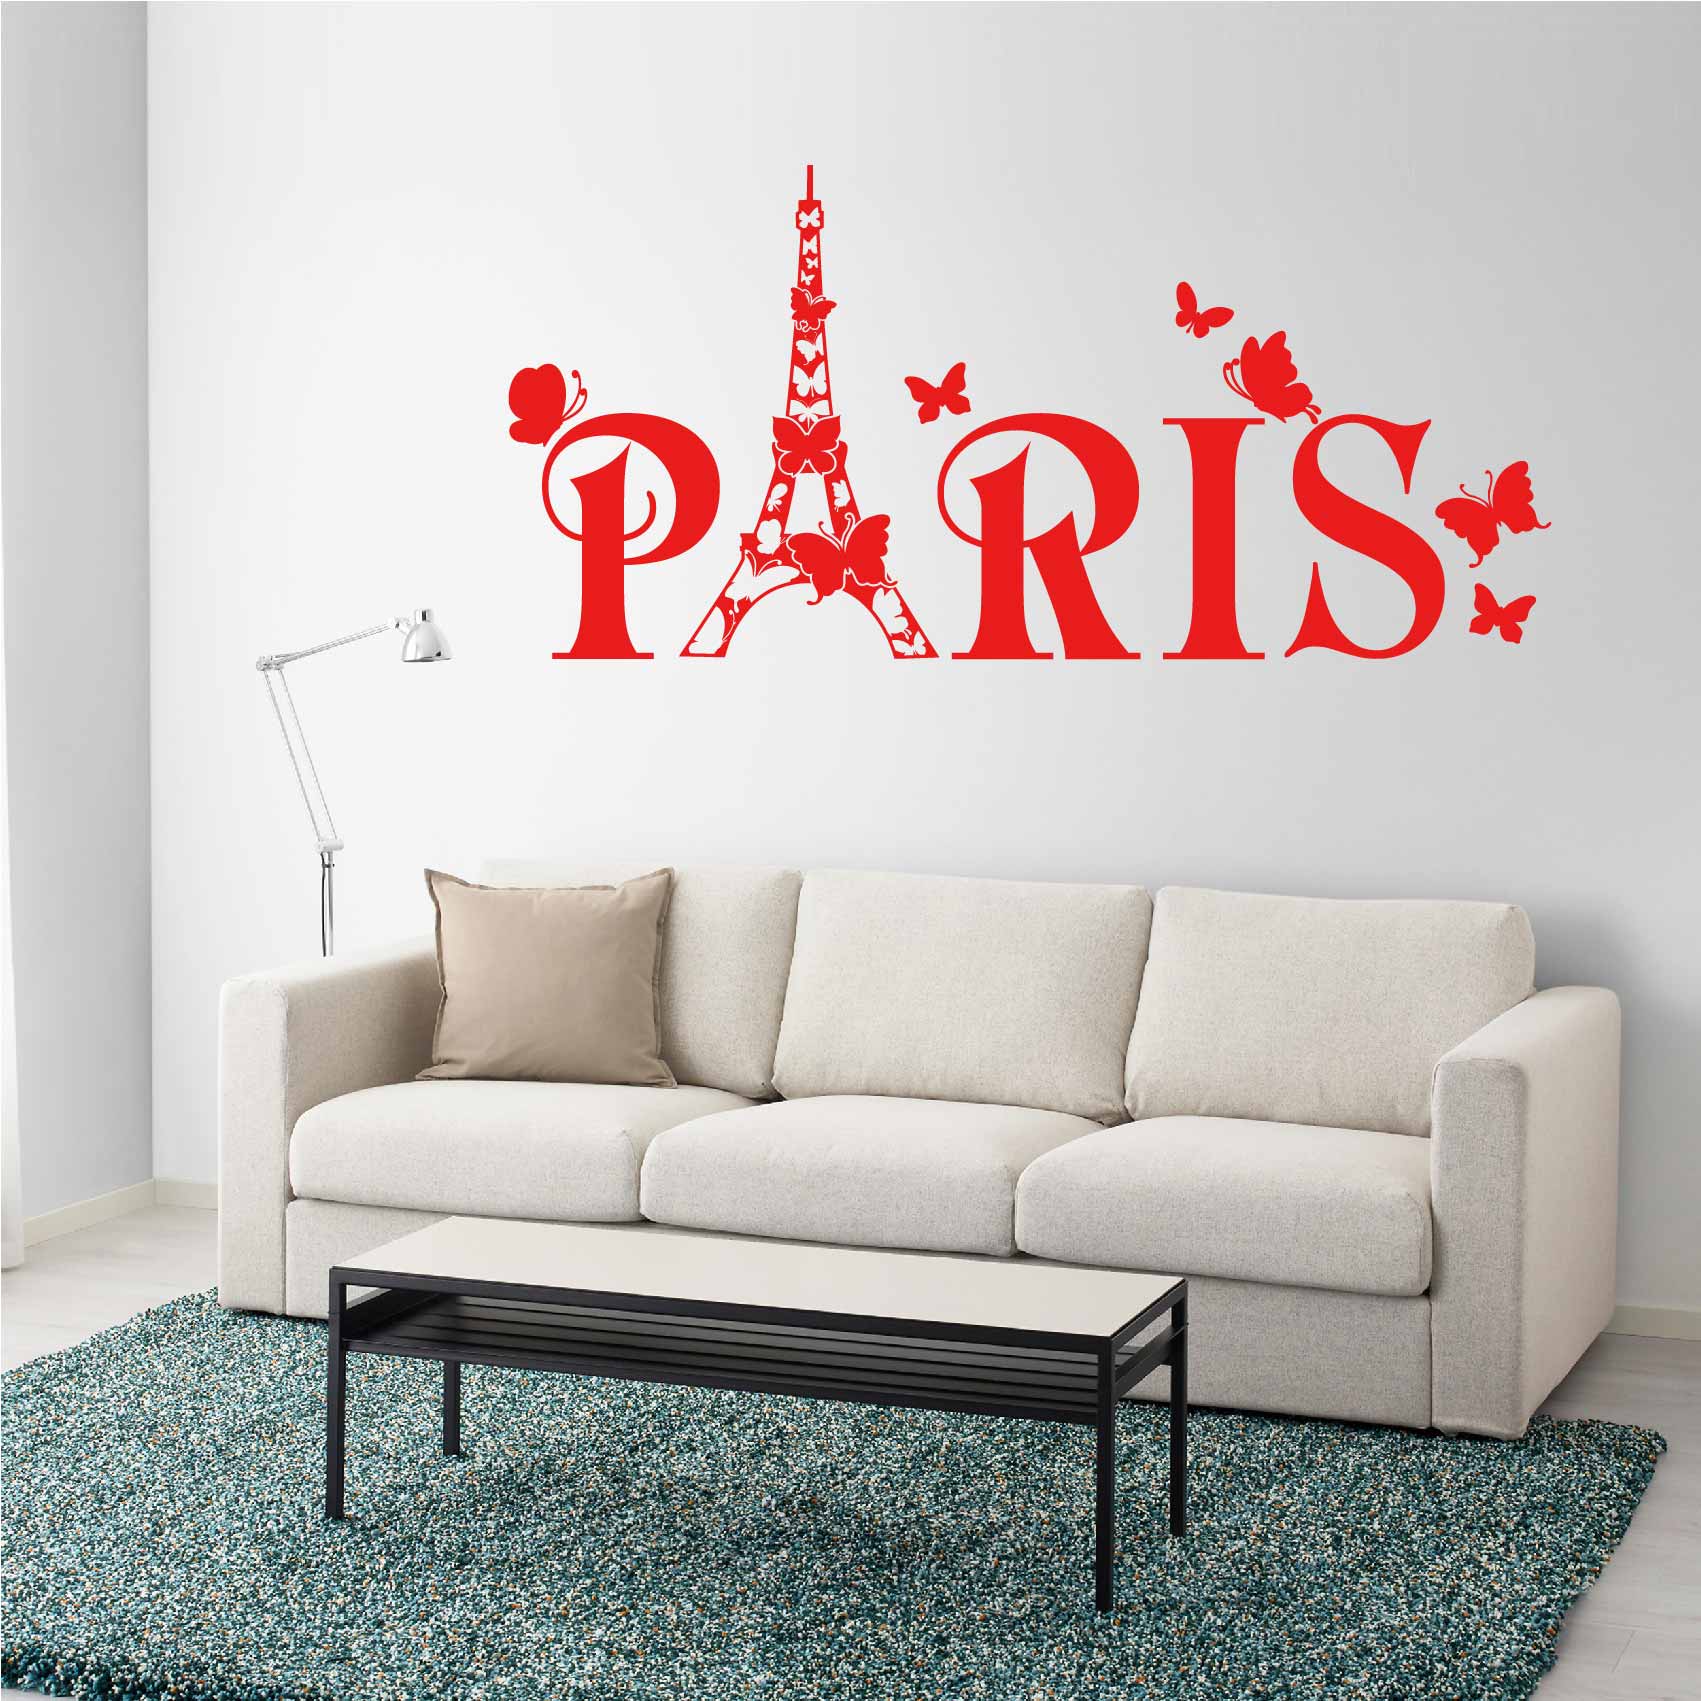 stickers-muraux-paris-ref16paris-stickers-muraux-paris-autocollant-deco-salon-chambre-voyage-sticker-mural-paris